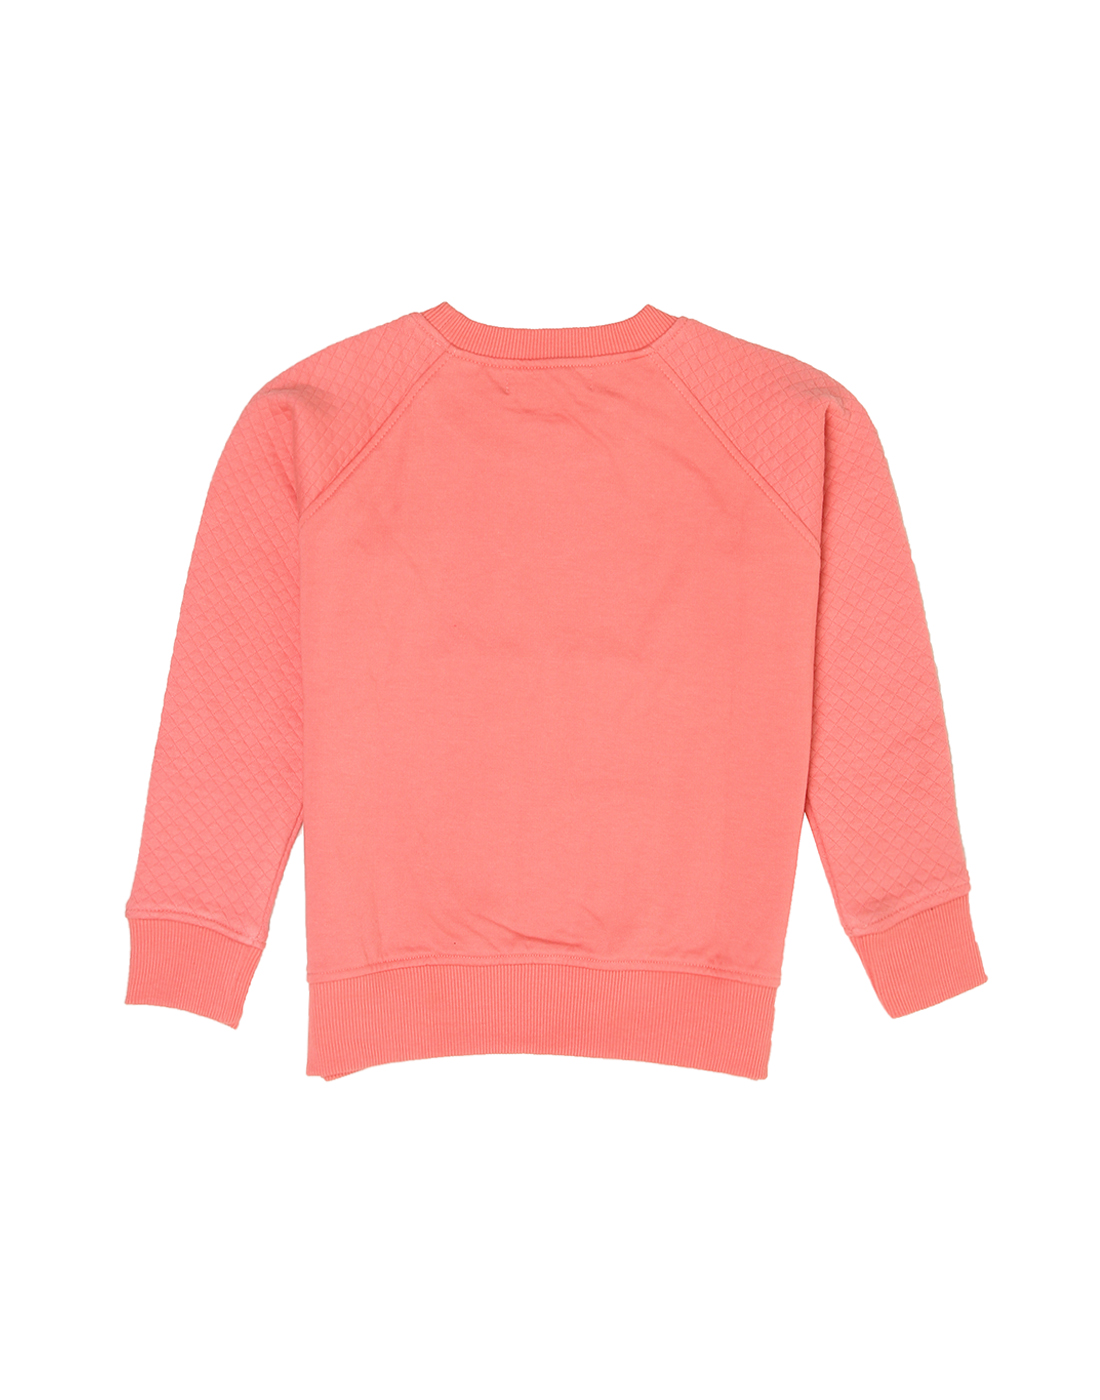 Wingsfield Girls Pink Sweatshirt